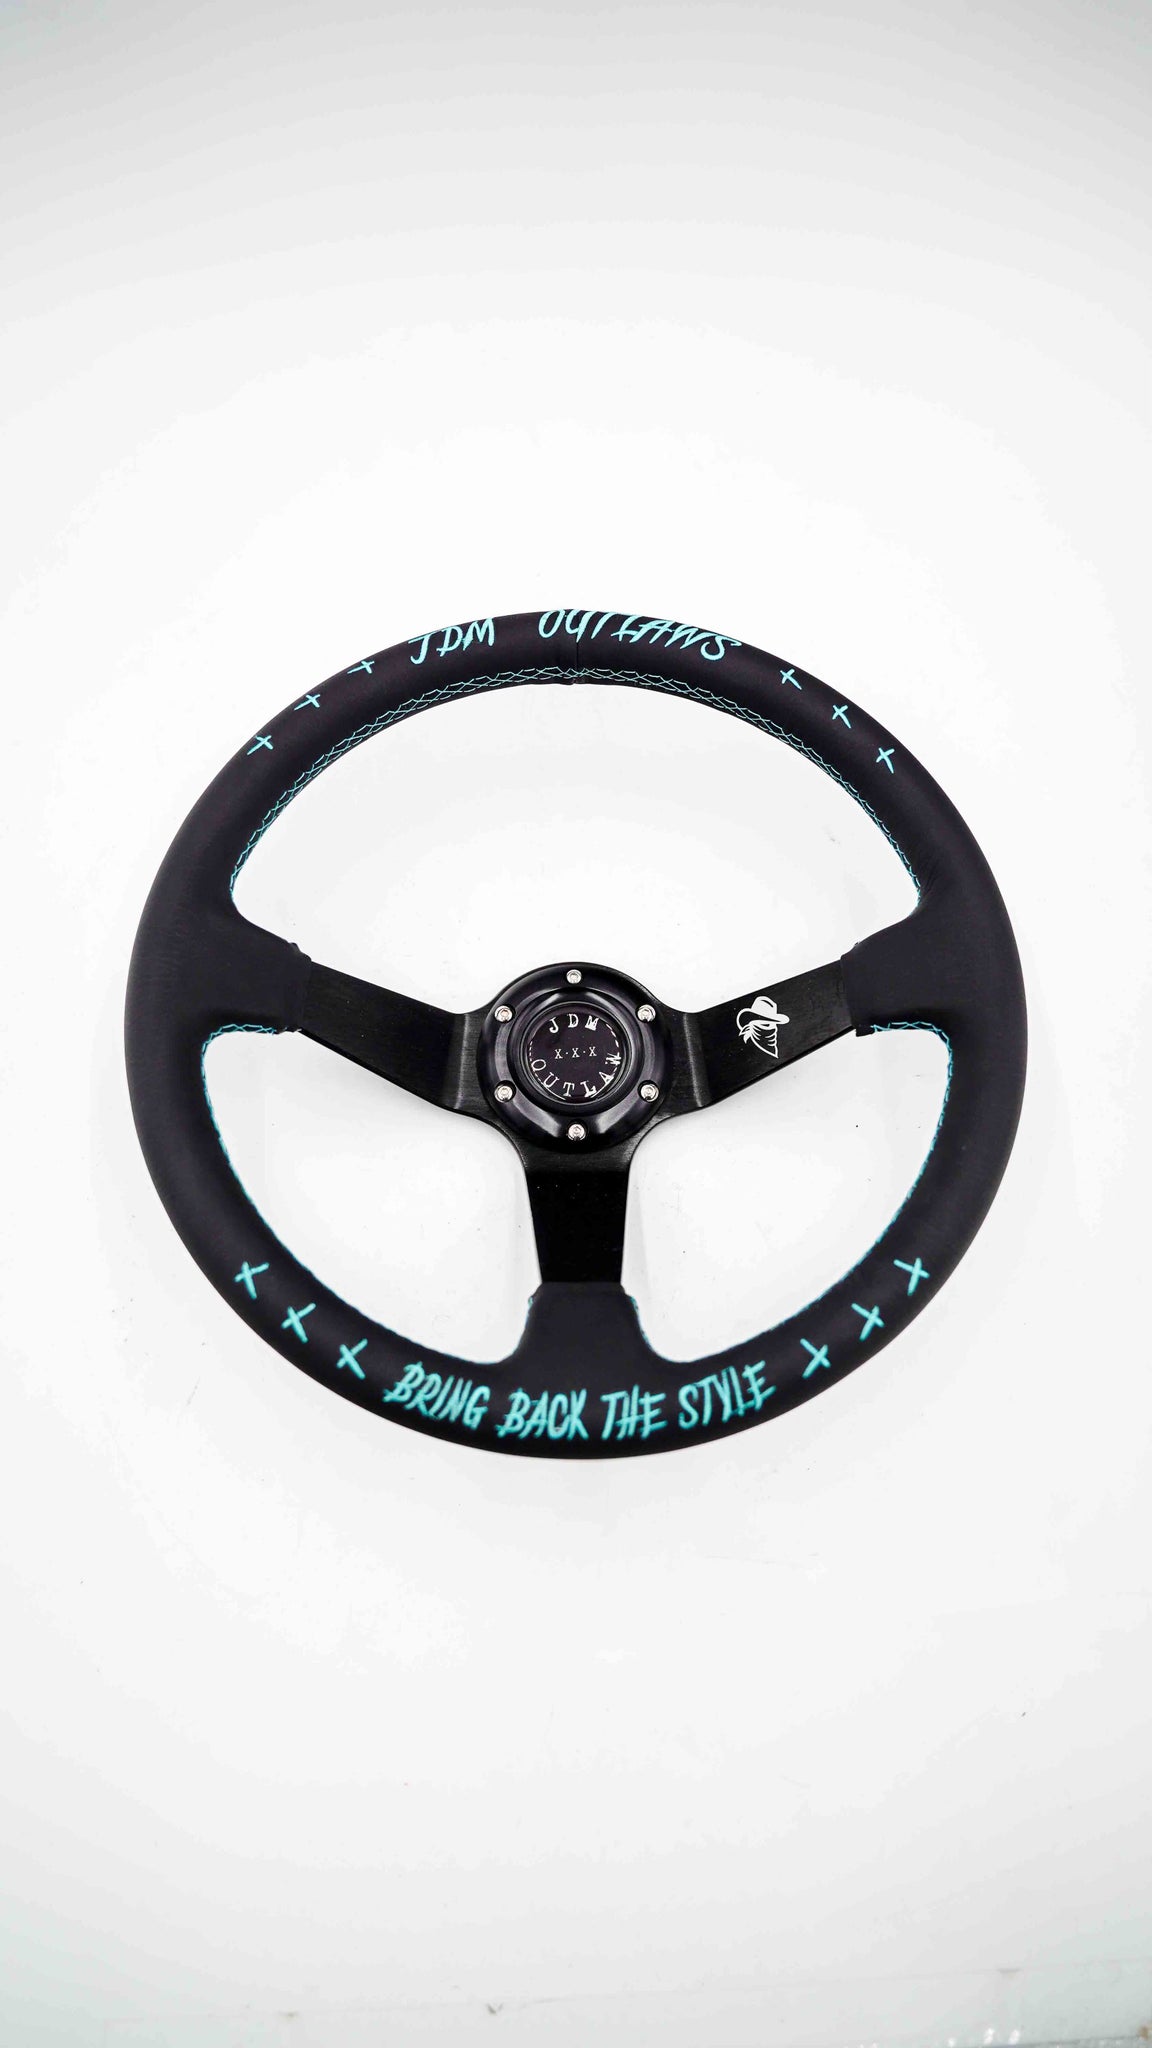 SPDZ1 JDM Outlaw Steering Wheel